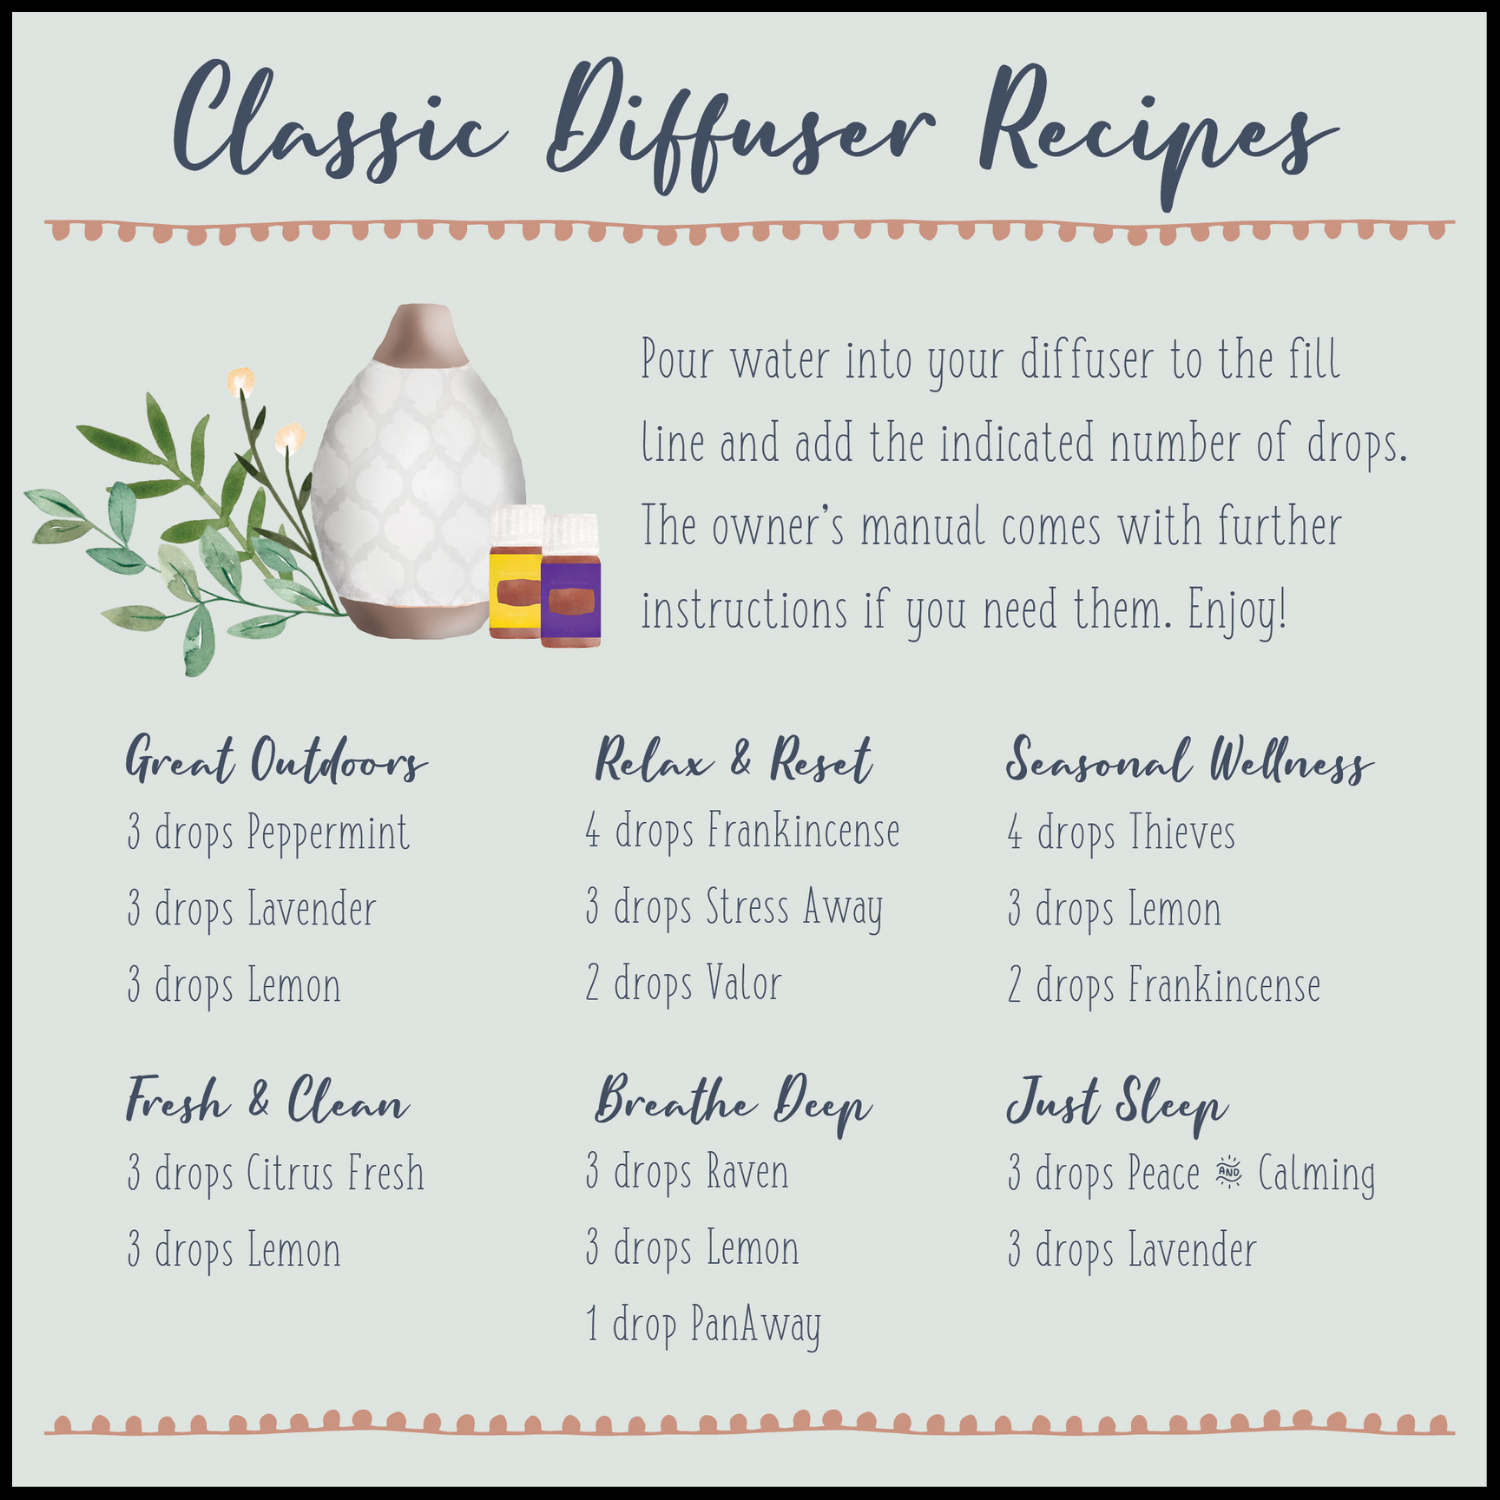 Classic Diffuser Recipes.png